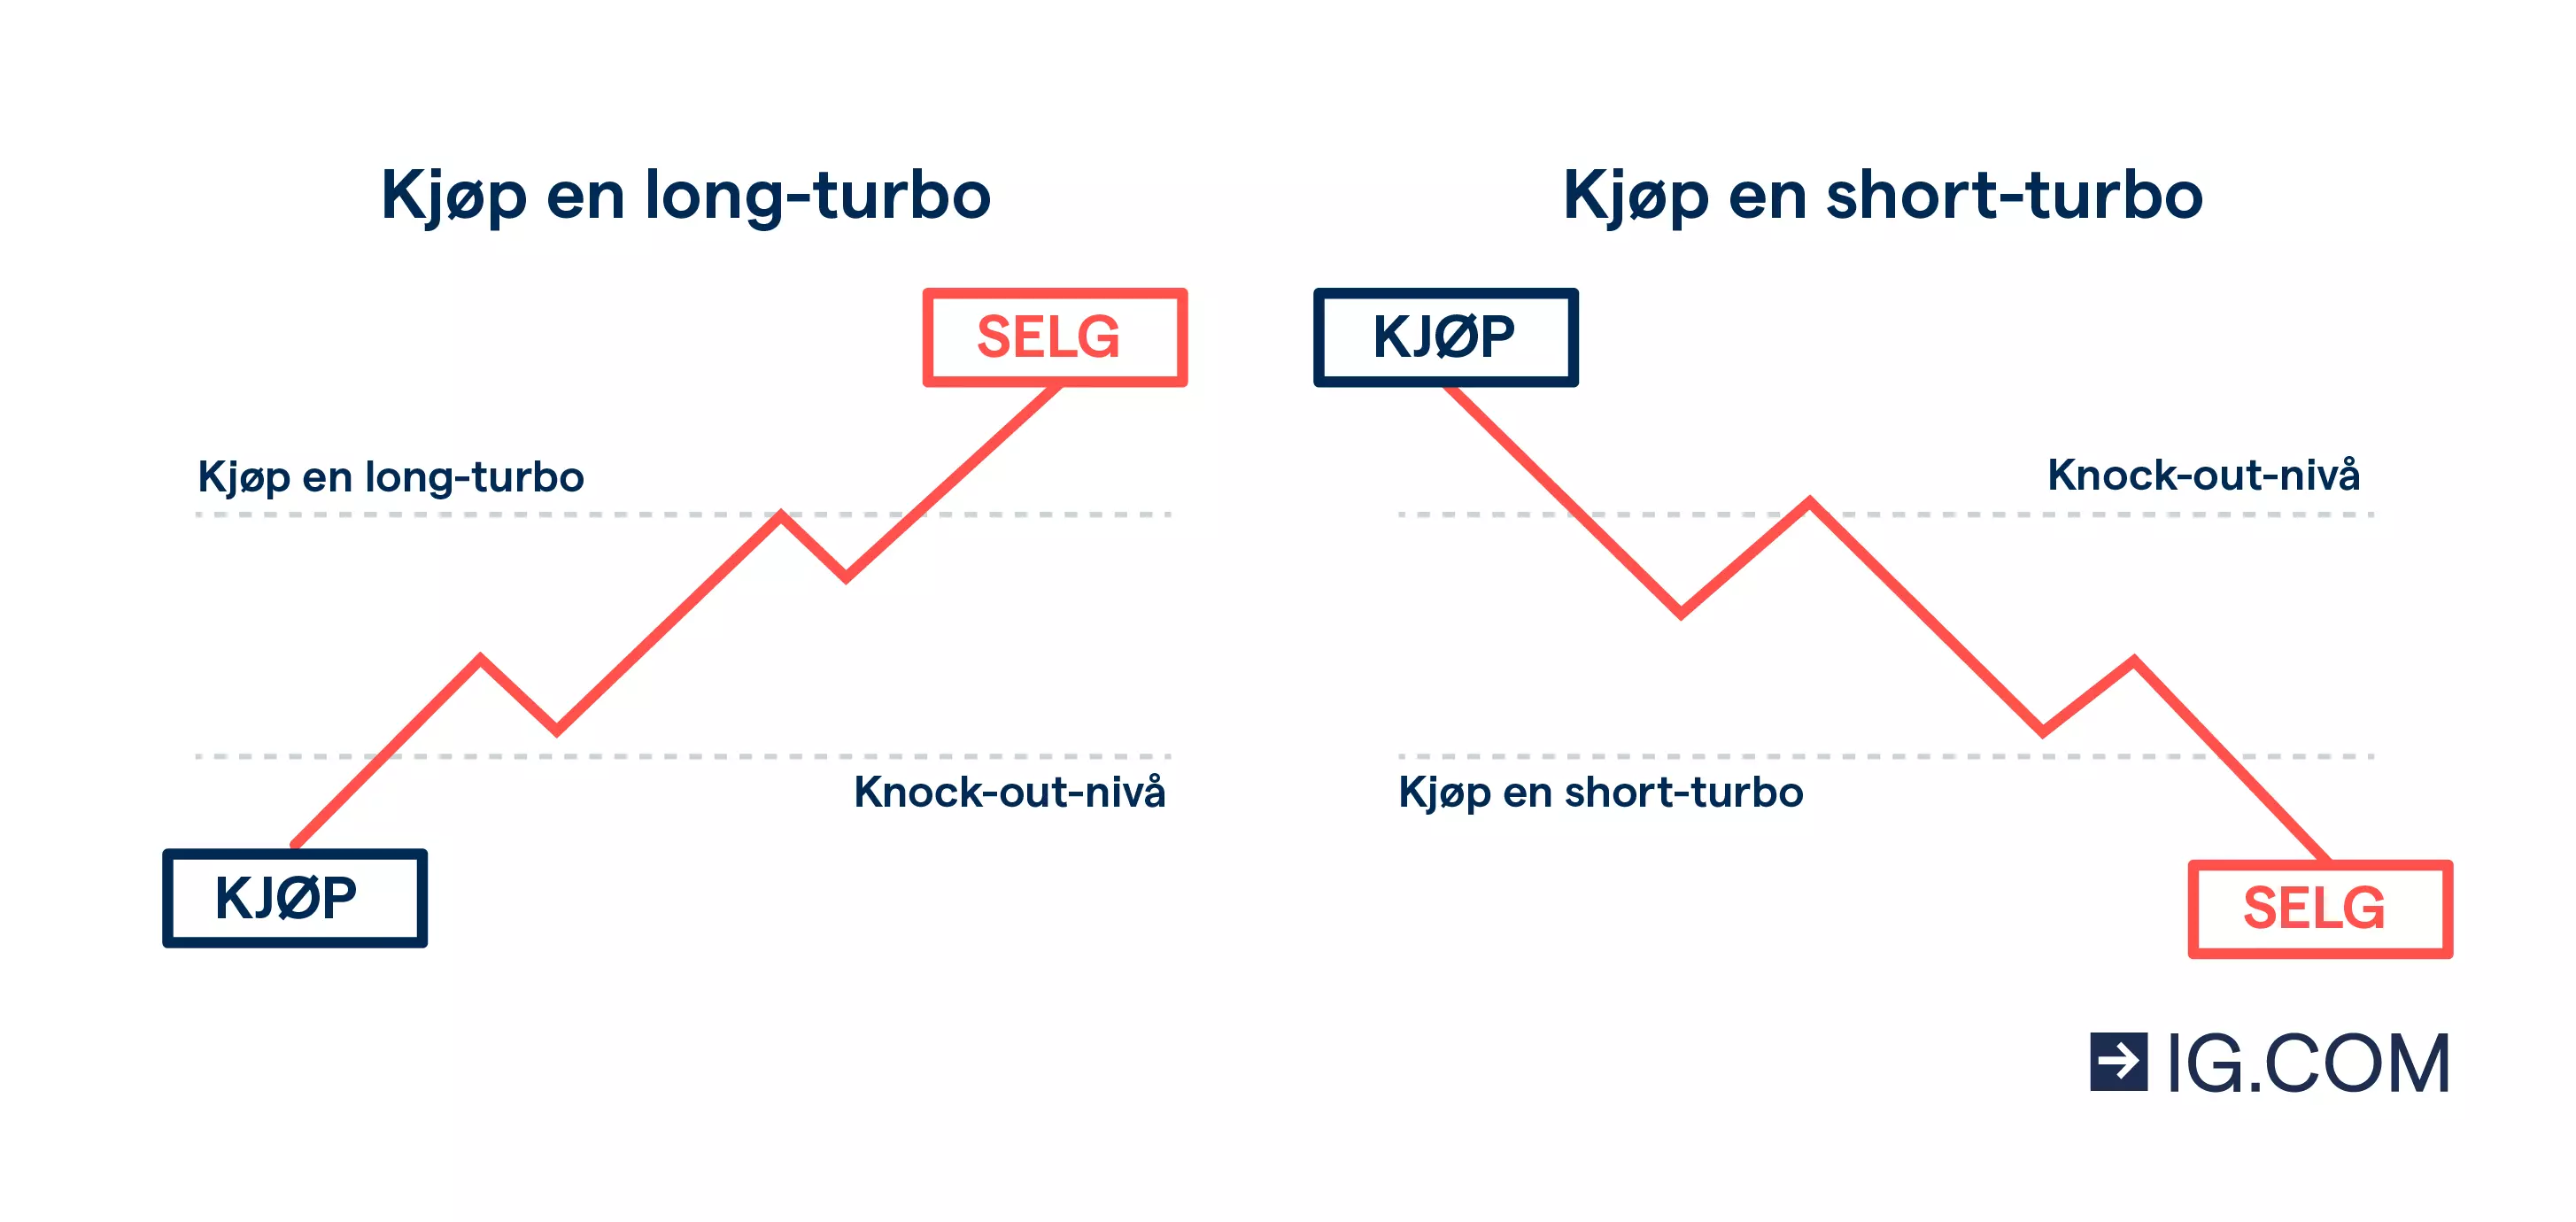 To diagram som viser hva som skjer nåt du kjøpet en lang og en kort turbowarrant, med knock-out-nivåene for begge.